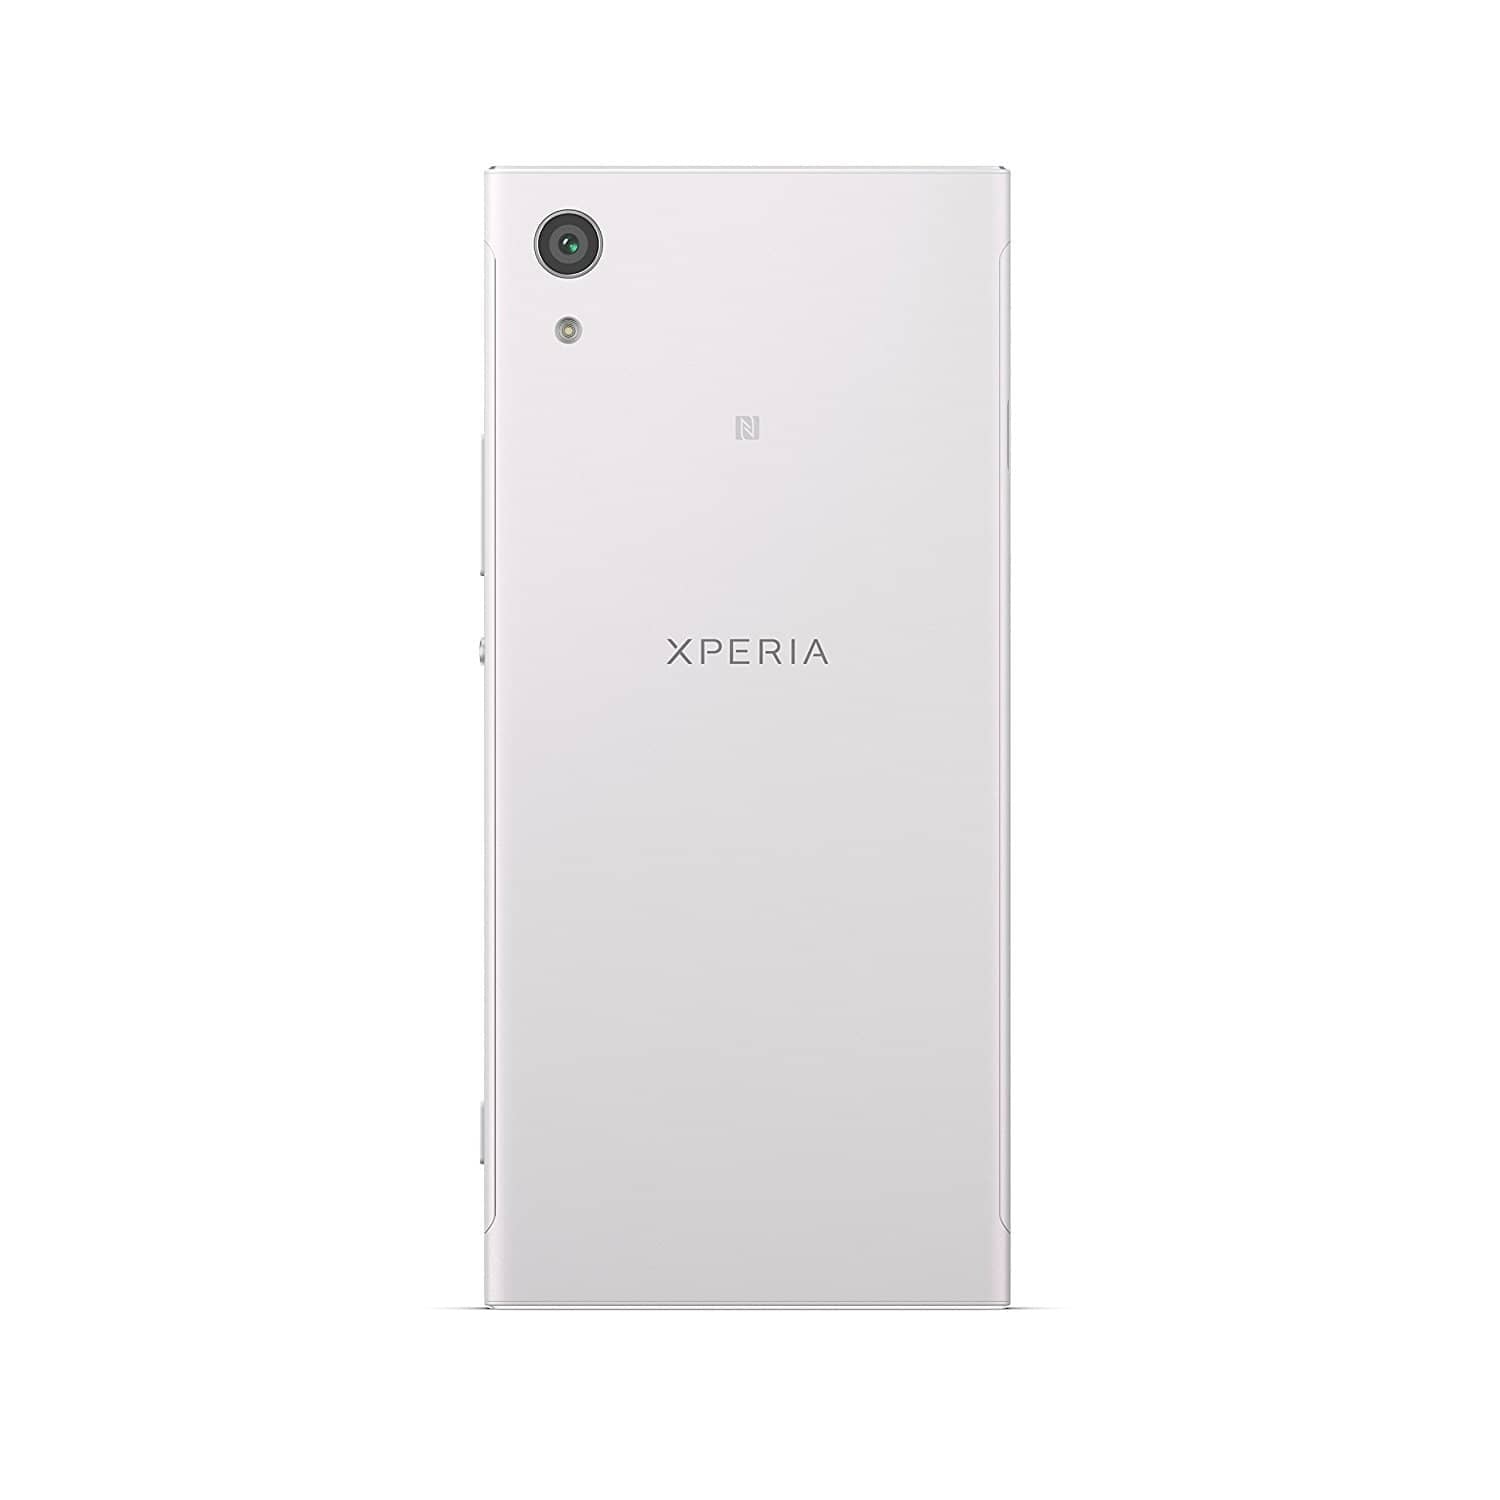 Sony Xperia XA1 - Unlocked Smartphone - 32GB - White (US Warranty)